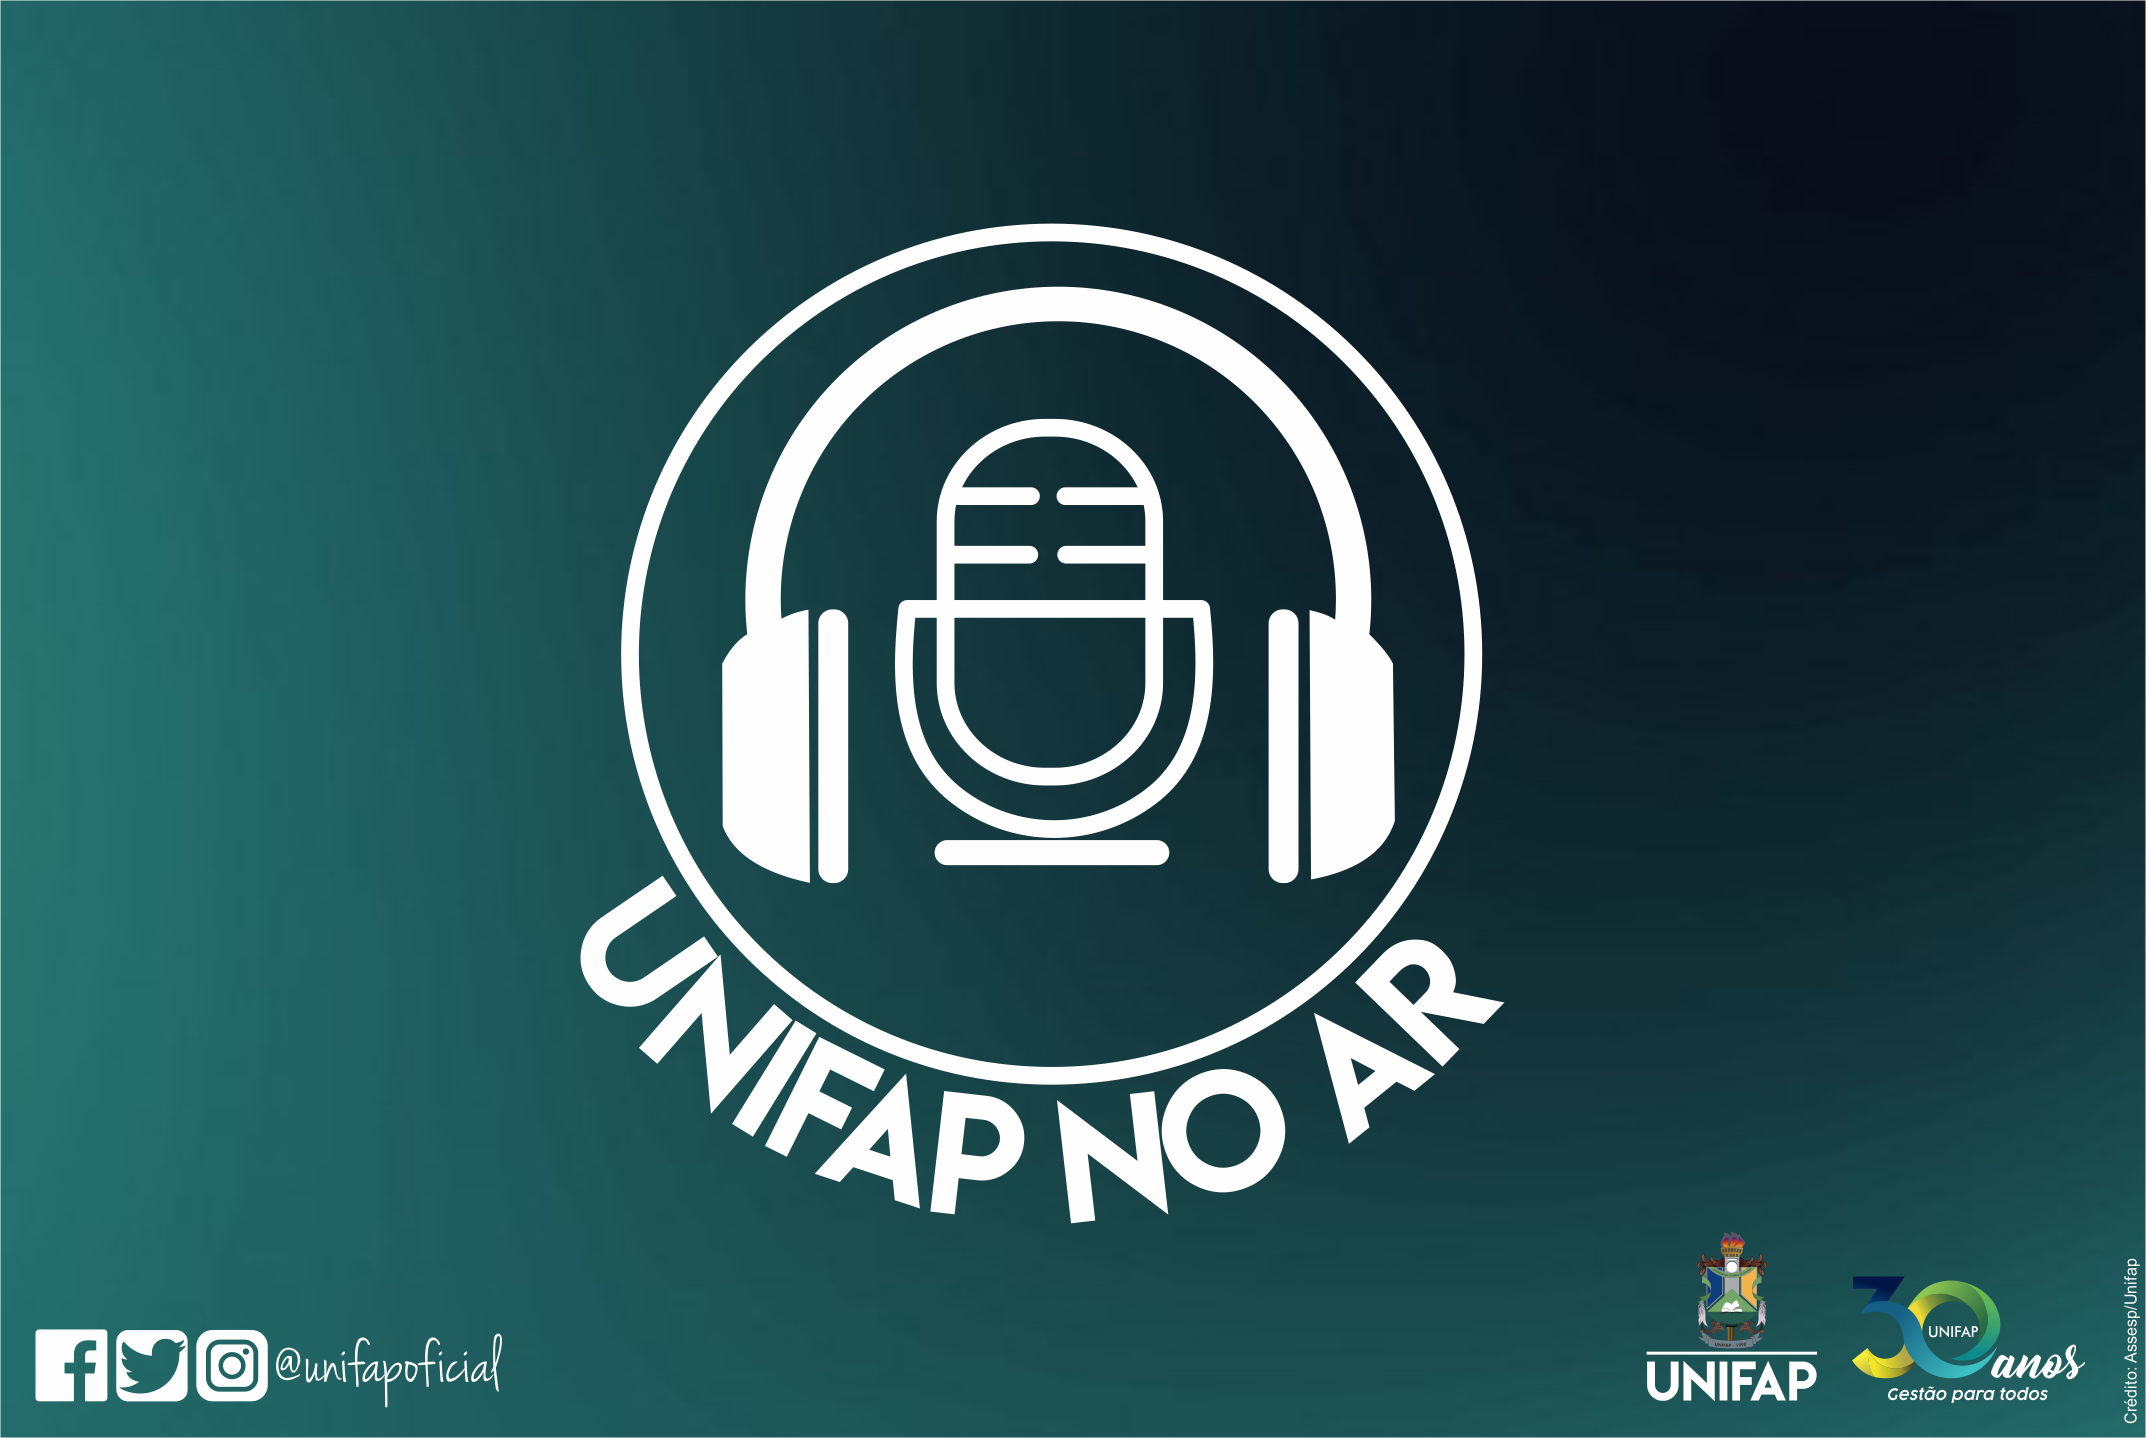 “Unifap no Ar”: boletim diário de notícias para a comunidade